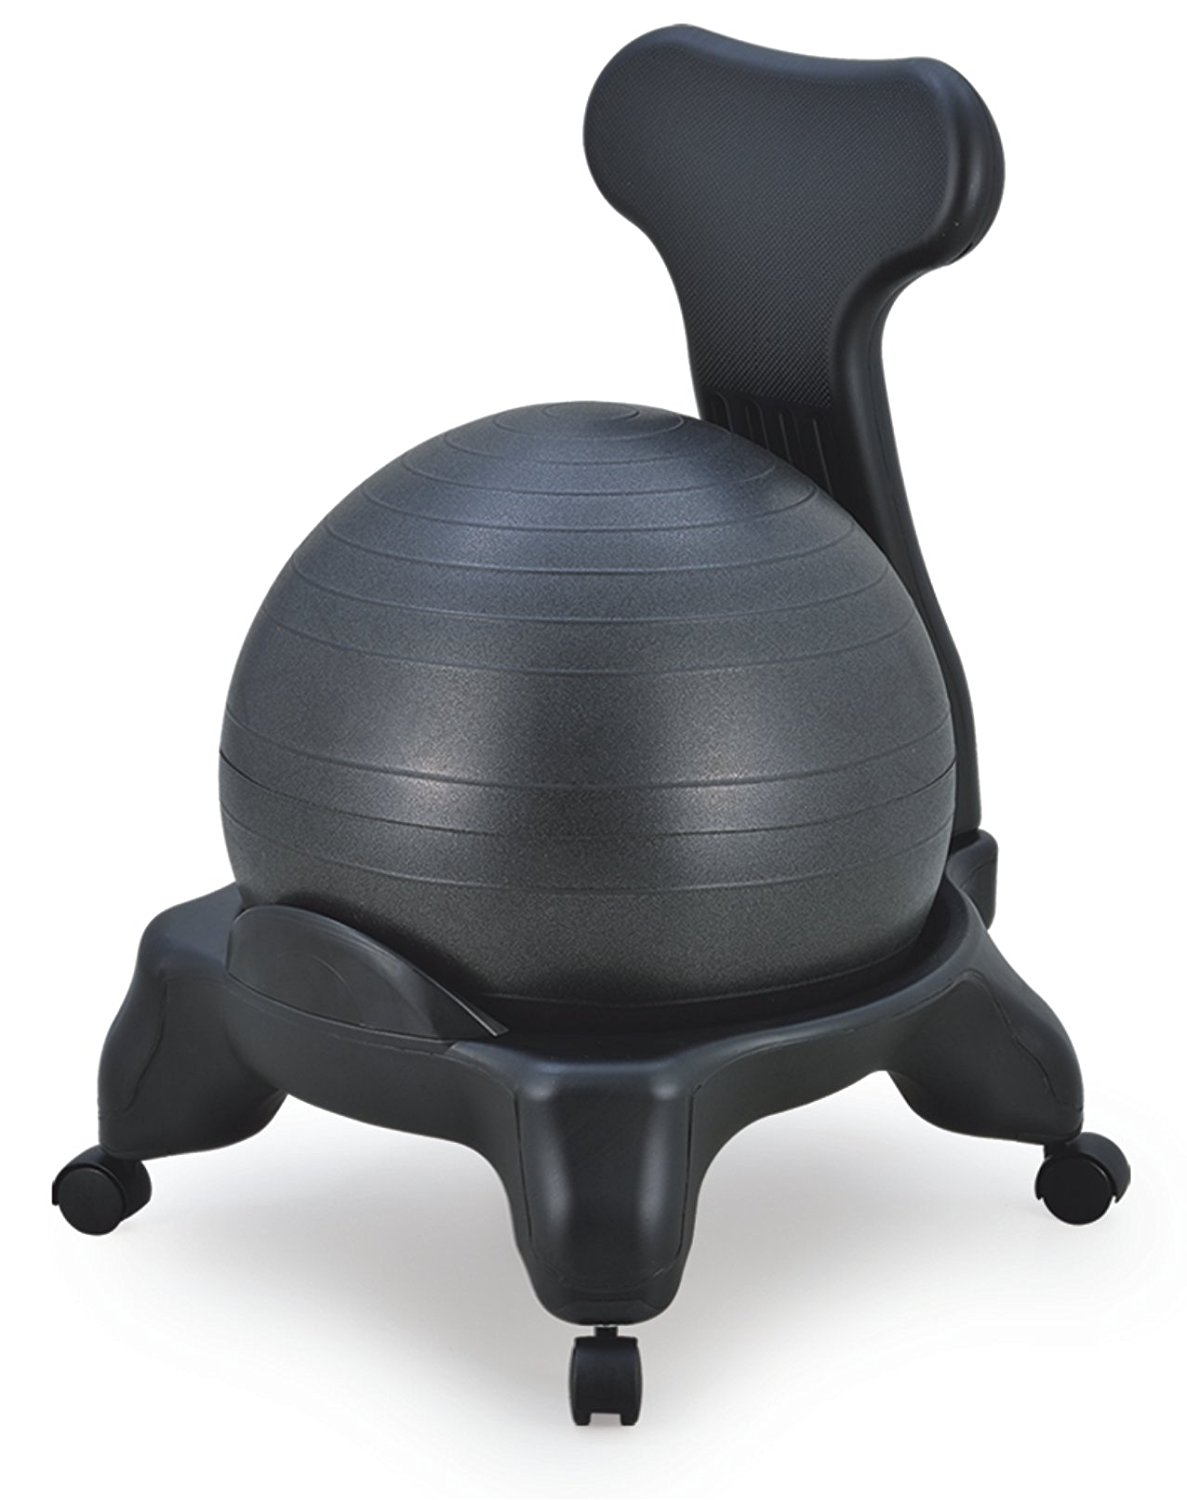 Sierra Comfort SC 0131 Balance Ball Chair With Backrest 